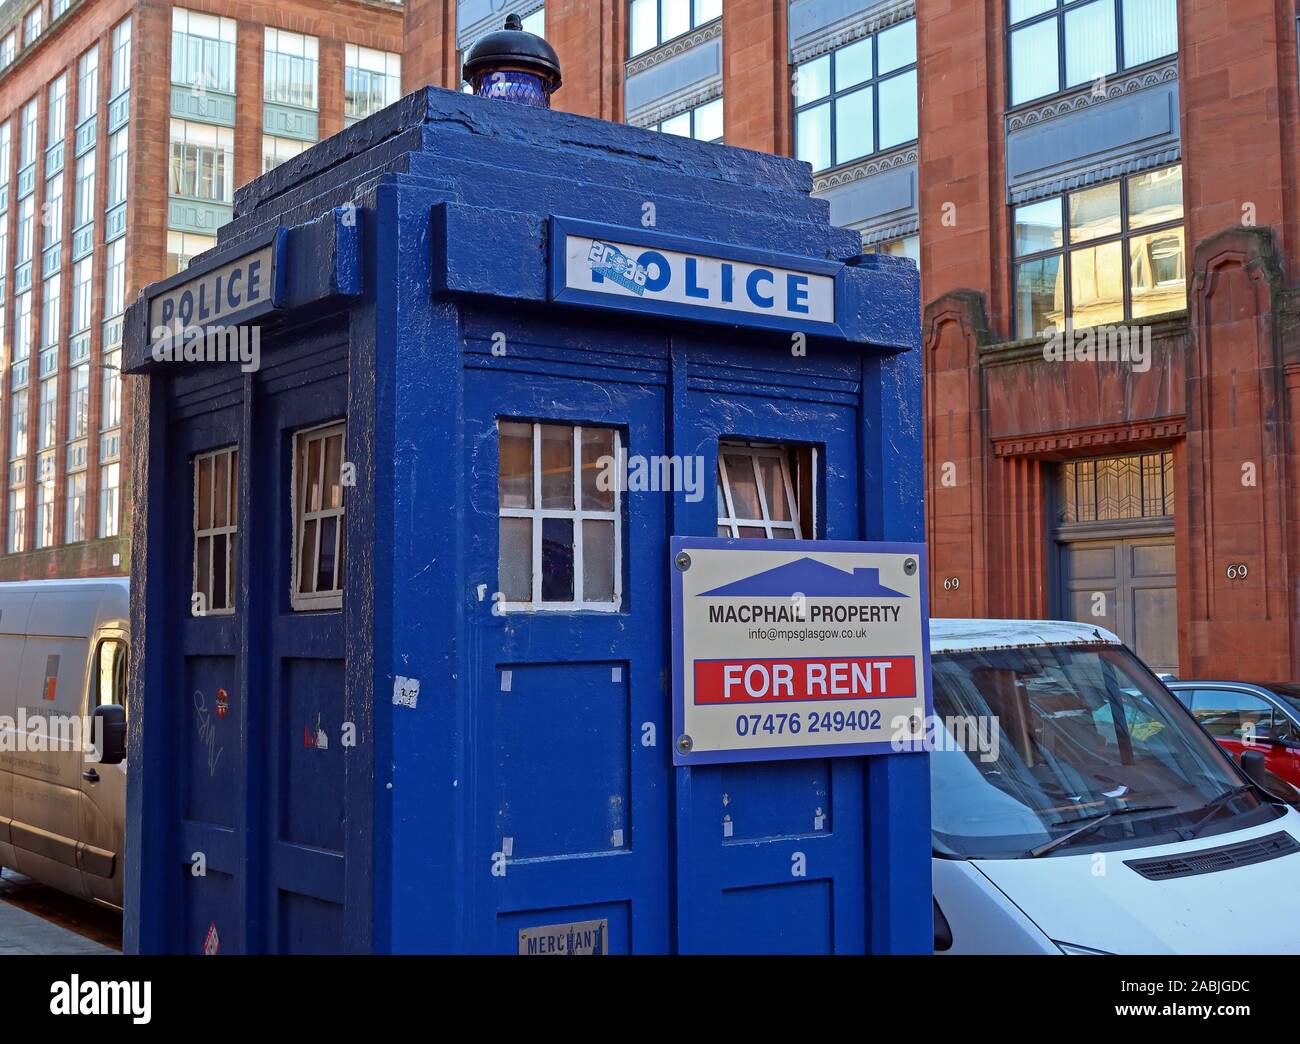 TARDIS à louer,Dr Who,boîte de police bleue,propriété Macphail,ville marchande,Glasgow,Écosse,Royaume-Uni, G1 1TX Banque D'Images